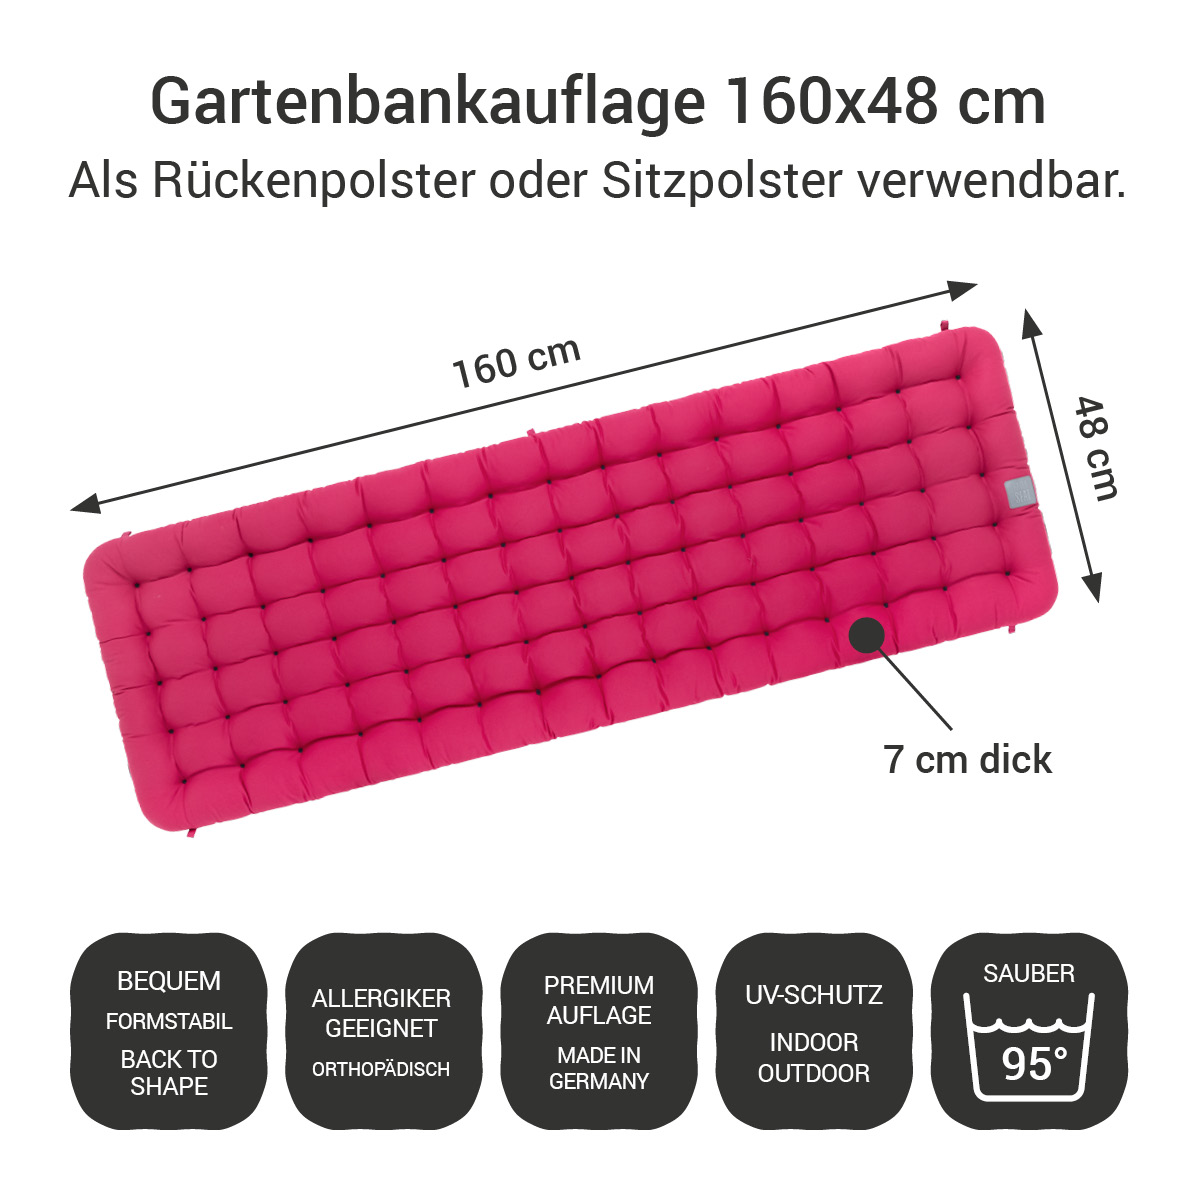 Gartenbank Auflagen (2tlg.) pink 160x48 cm / 160 x 50 cm | bequem & orthopädisch, komplett im Ganzen waschbar bis 95°C, wetterfest, Made in Germany